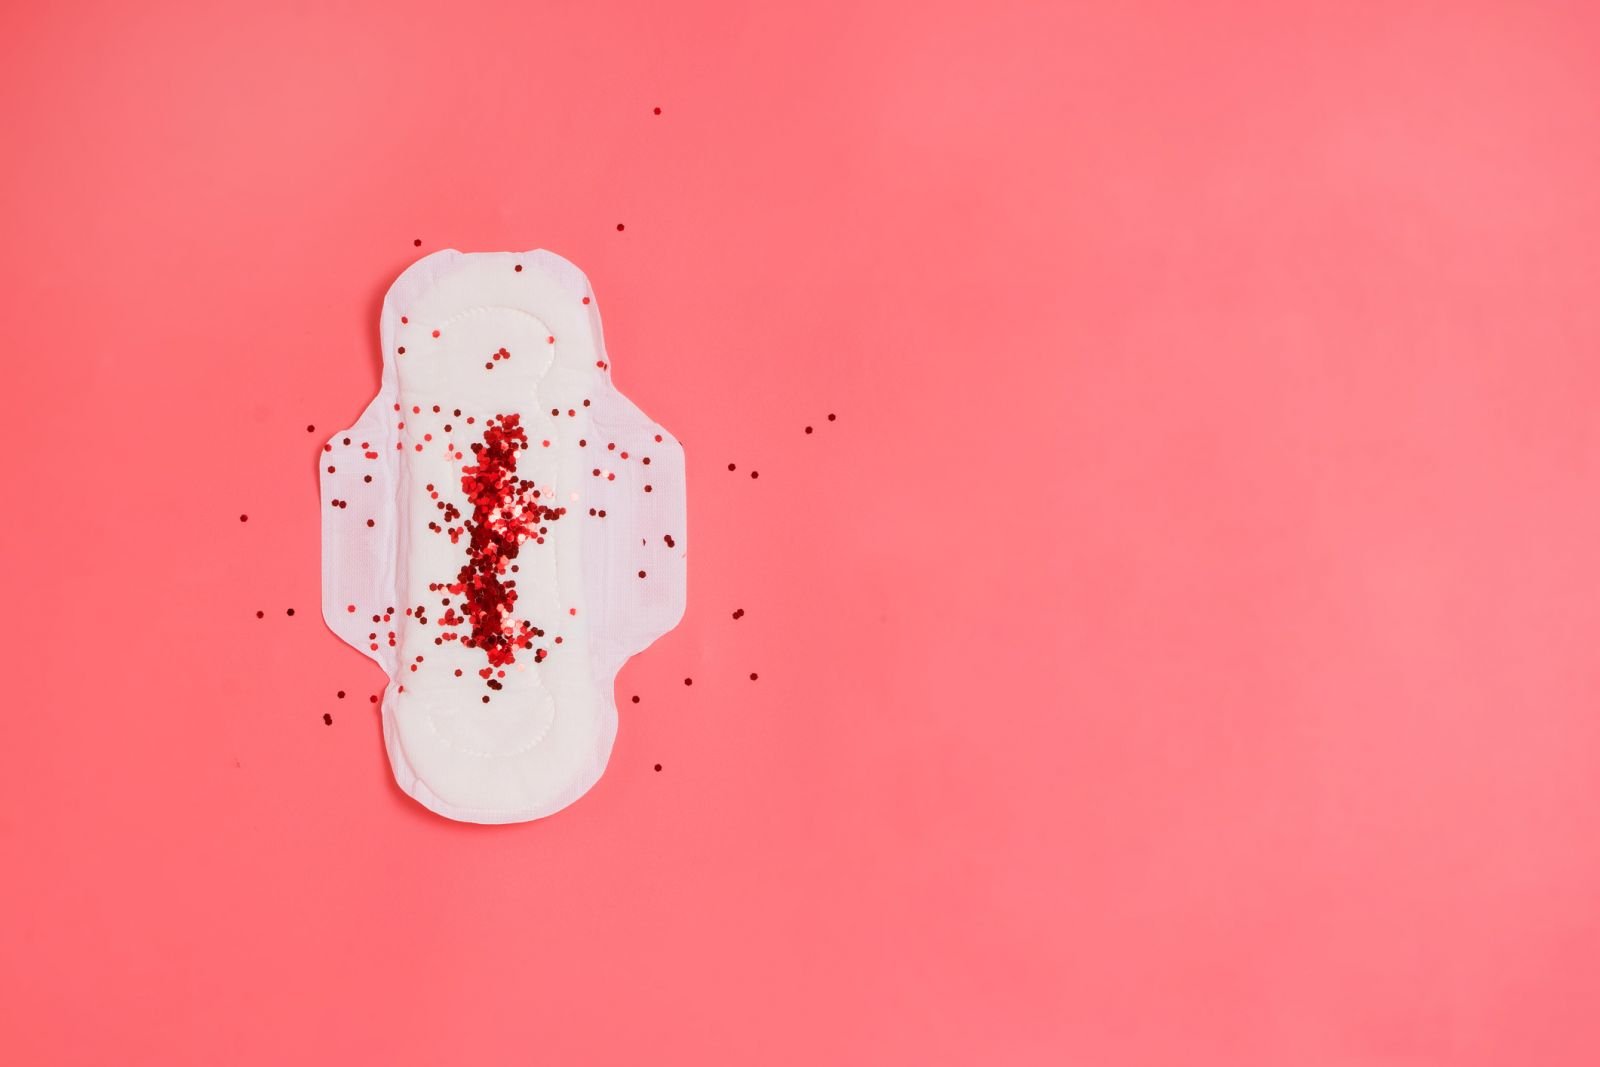 Zyklus der Frau erklärt: Von Menstruationsblutung bis Eisprung